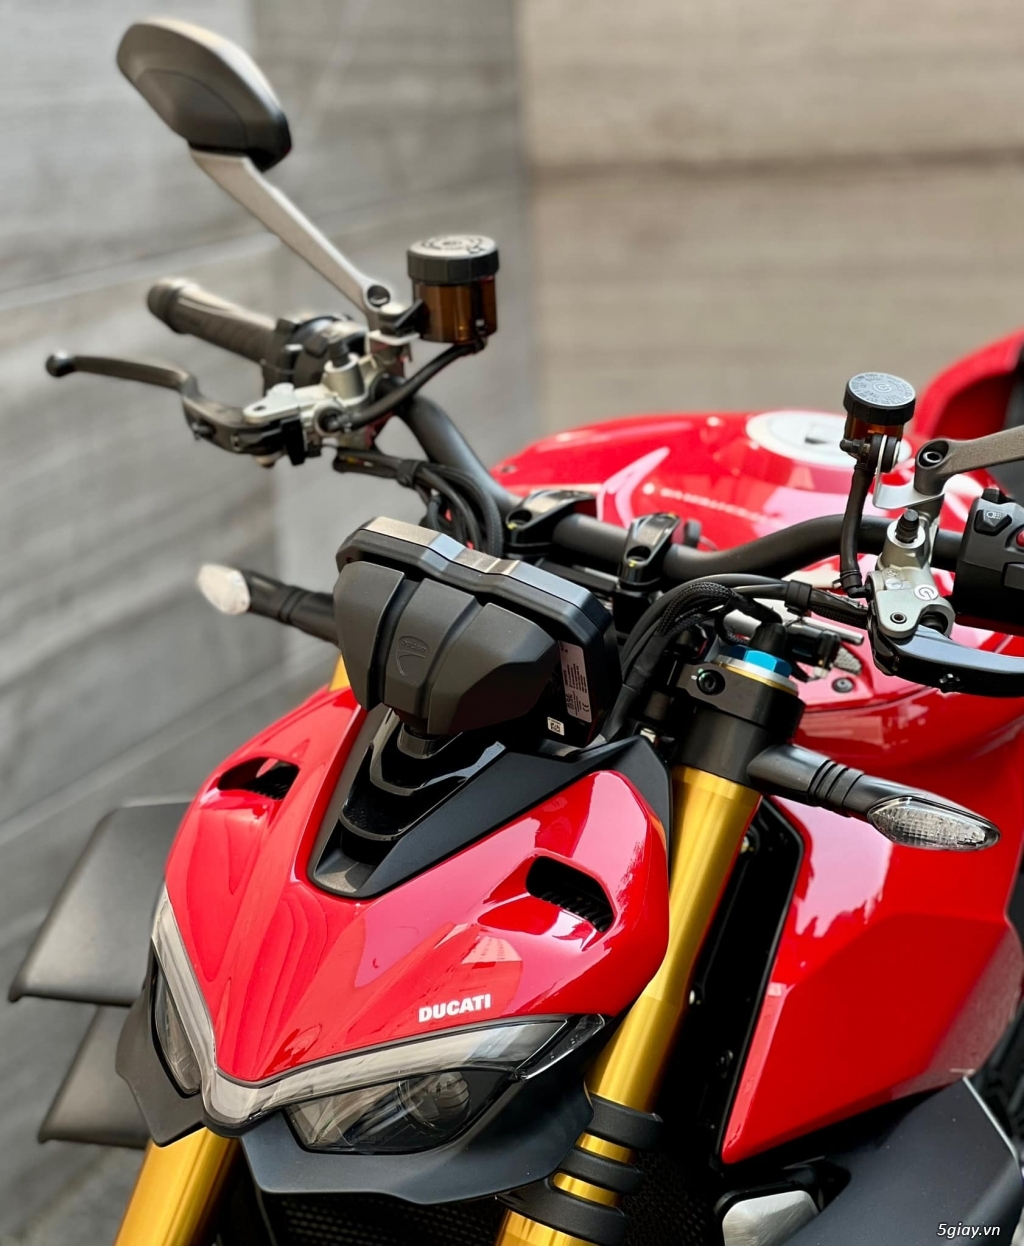 Ducati 899 Panigale 2021 Chính Hãng New 100% - 8